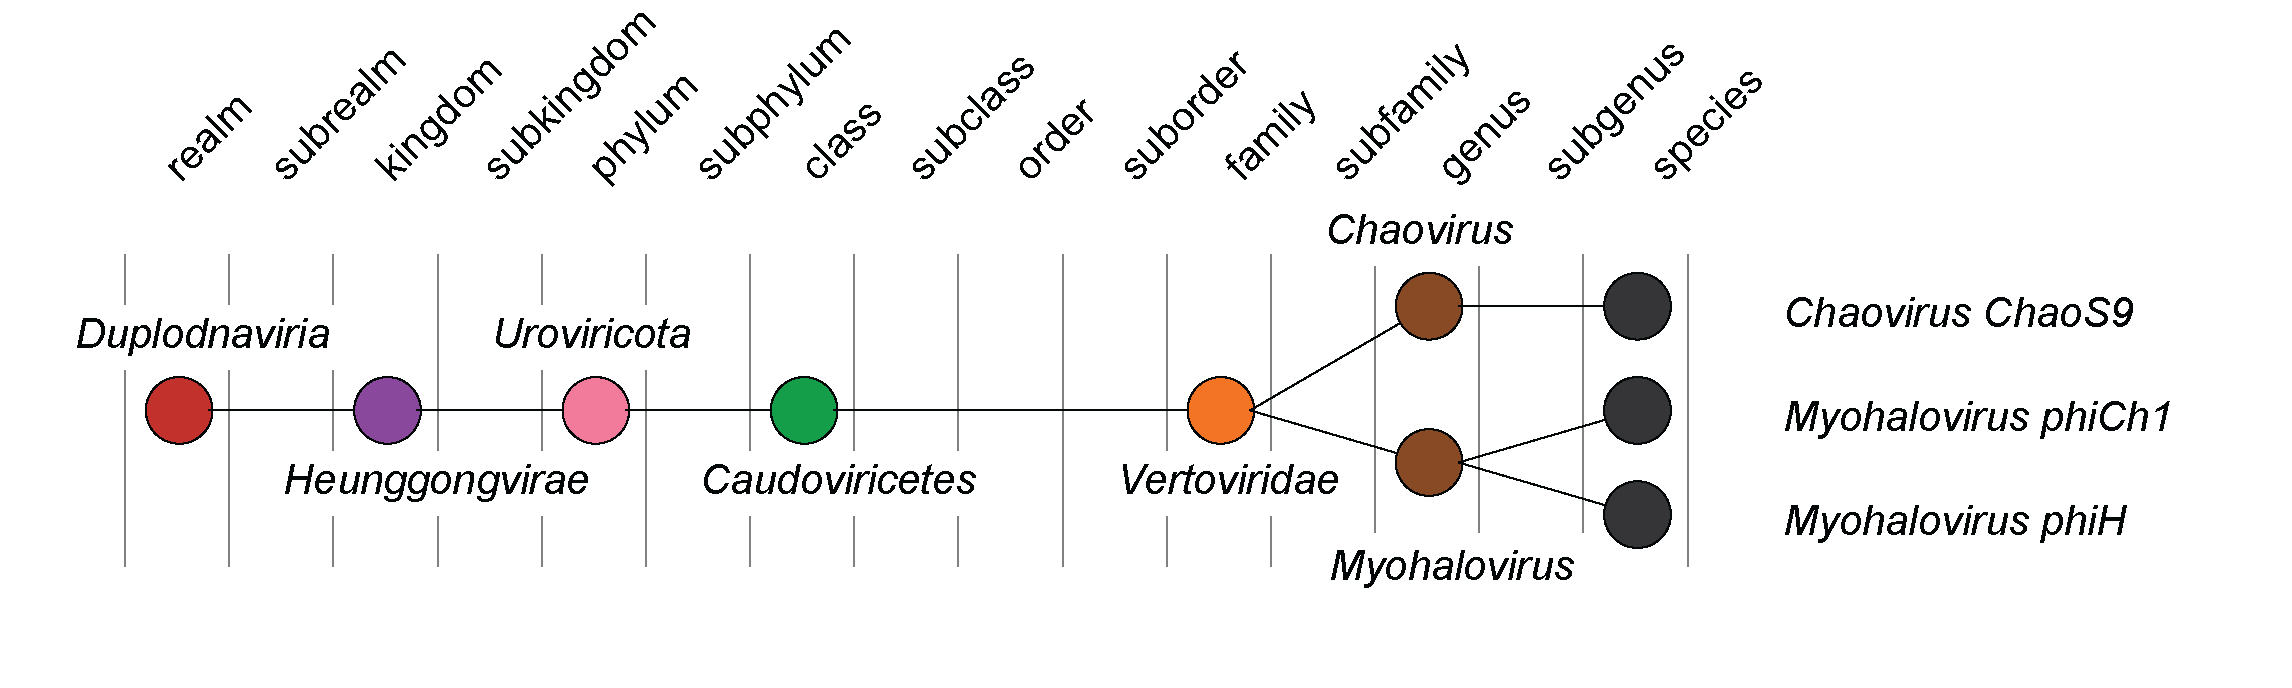 Vertoviridae taxonomy